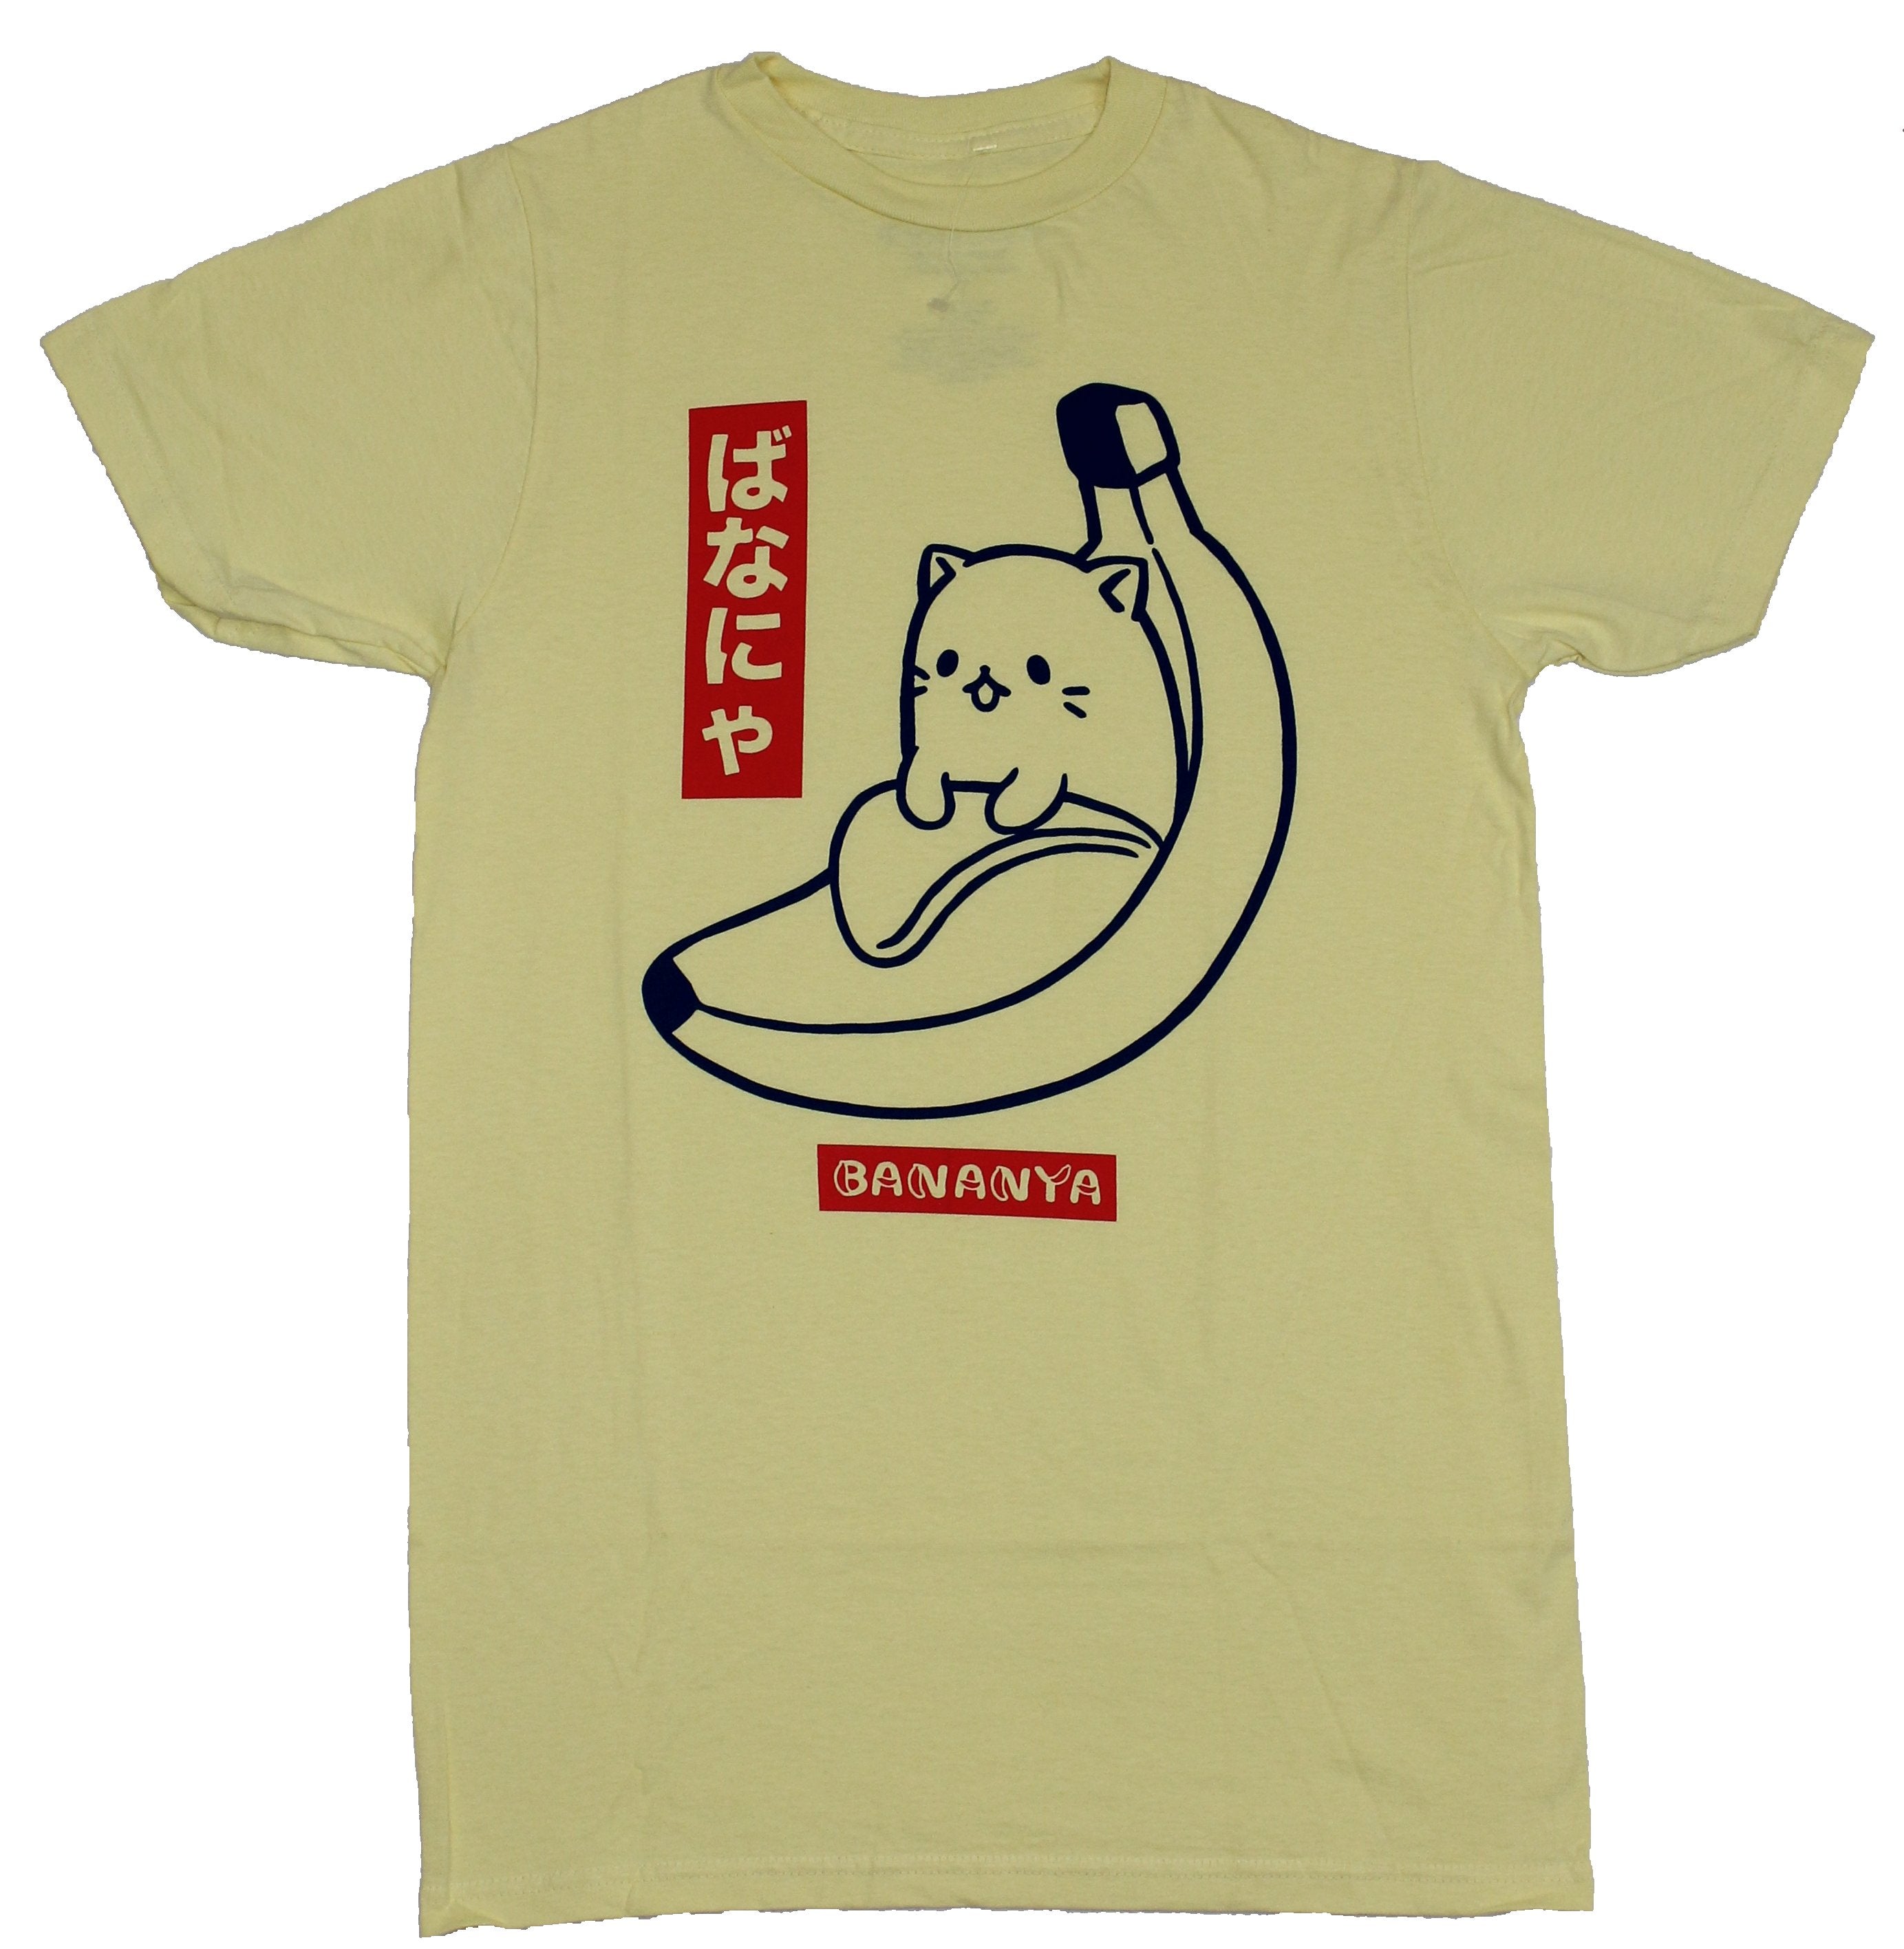 Bananya Mens T-Shirt - Drawing Next To Japanese Characters